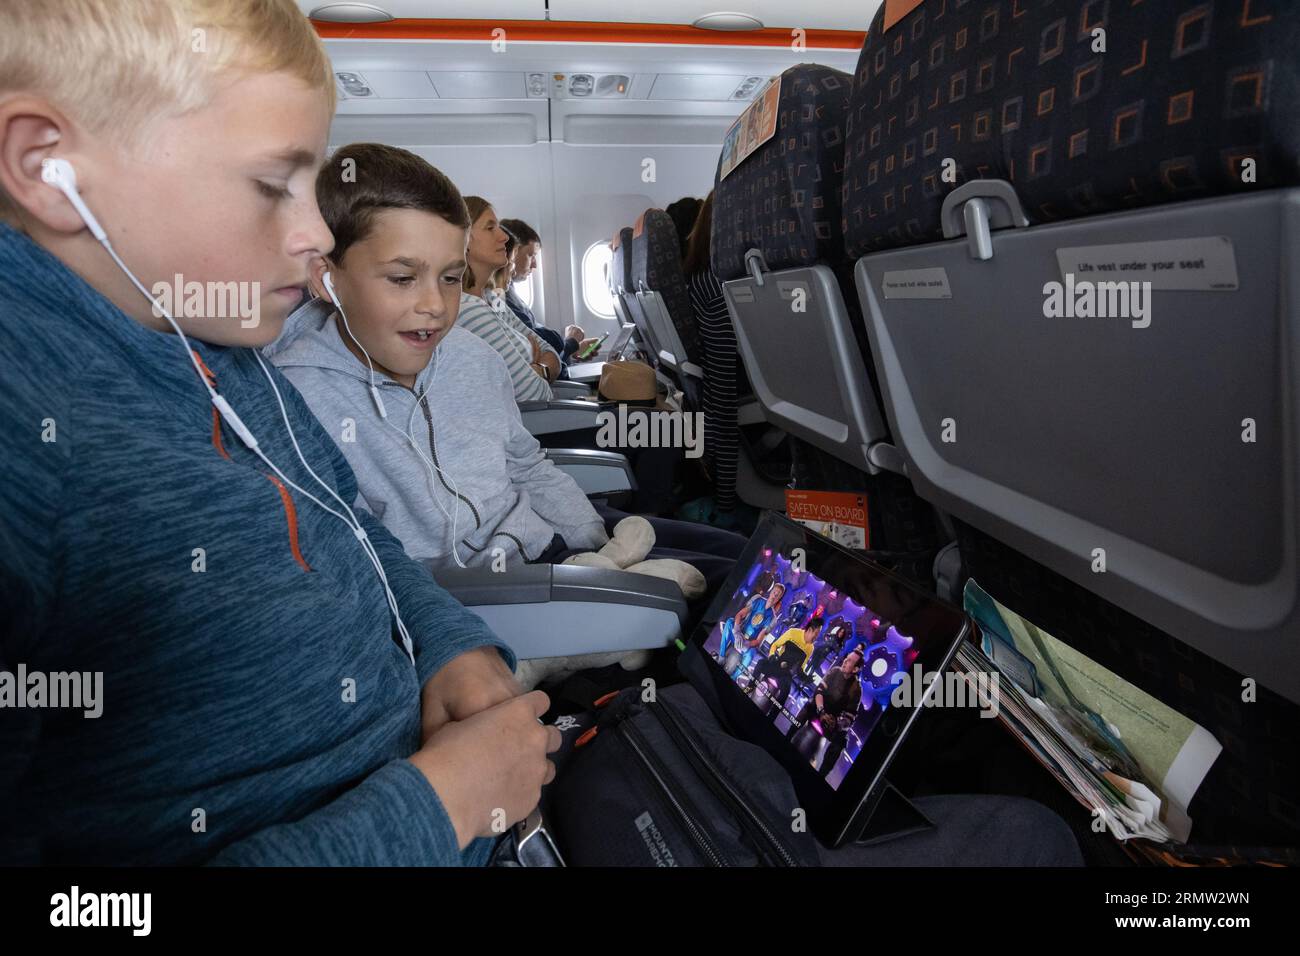 Junge Familie auf dem iPad, die sich einen Film anschaut, während sie mit der EasyJet Low-Cost-Fluggesellschaft fliegt Stockfoto